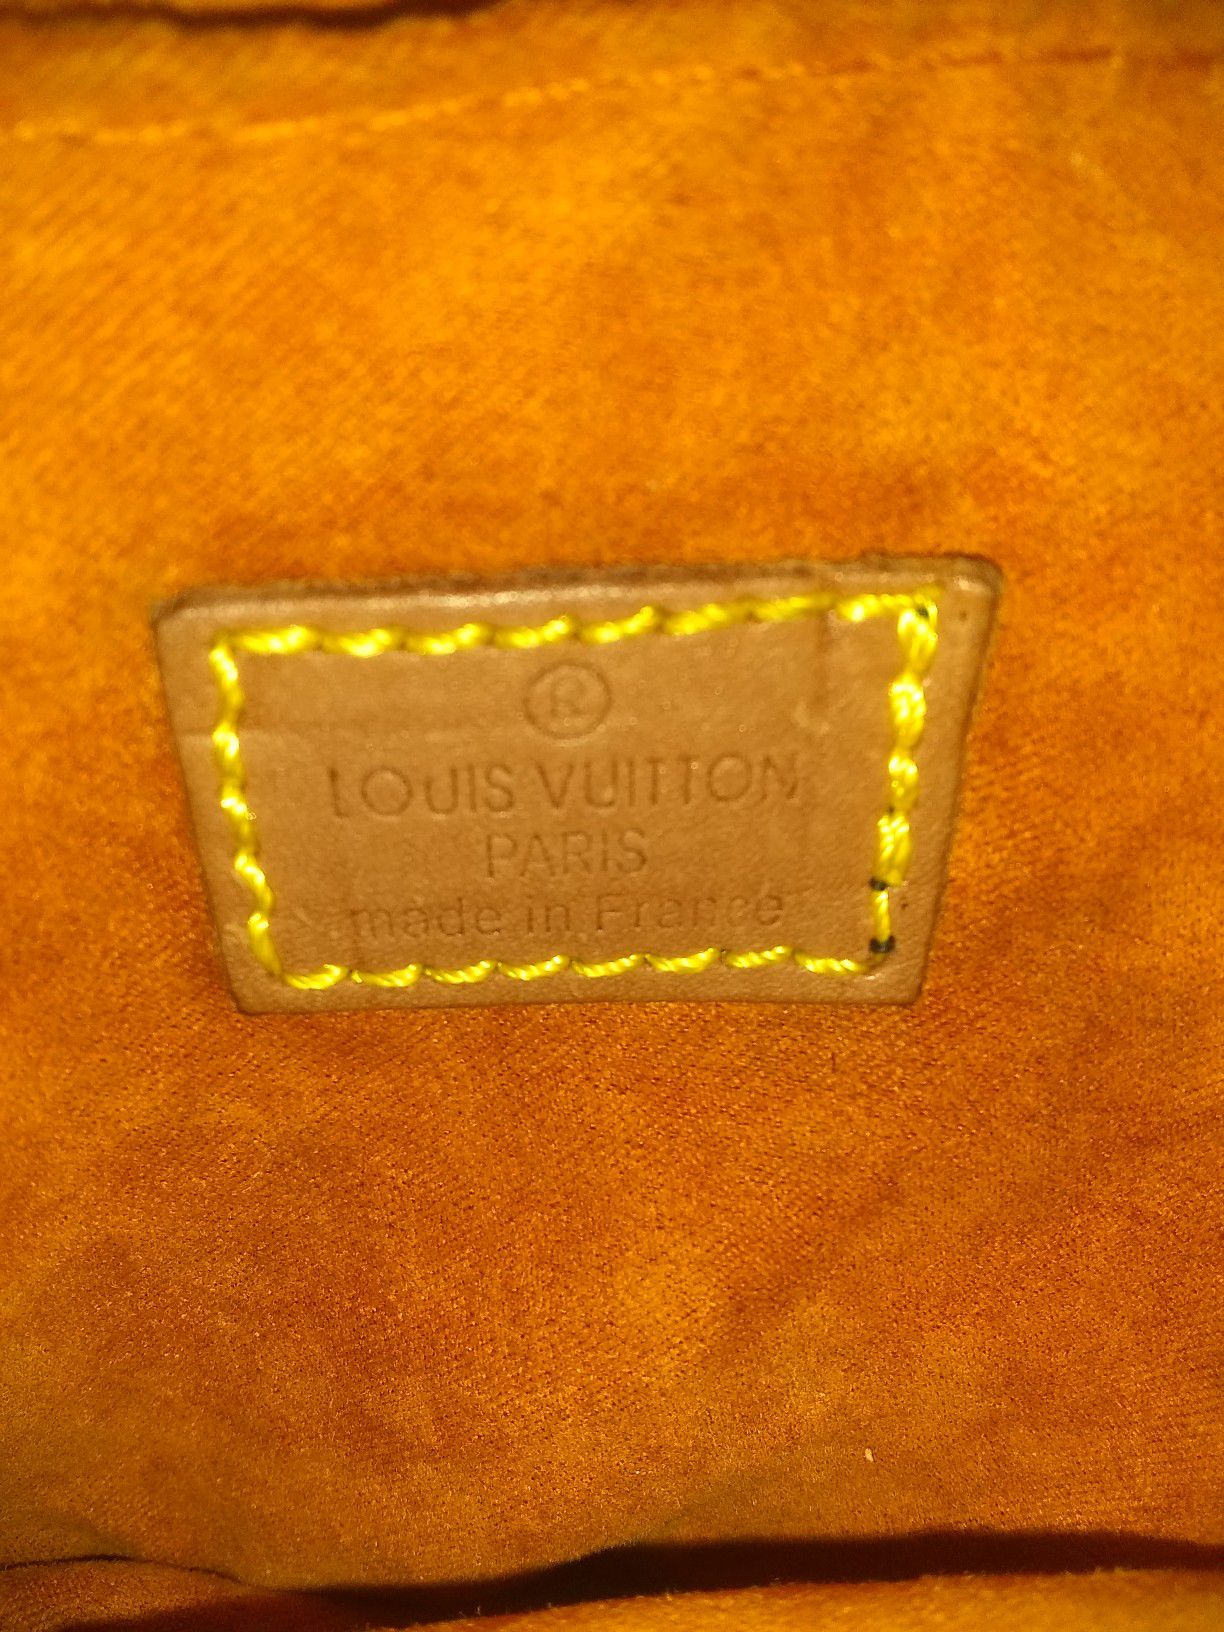 330rb**# md. Louis Vuitton Remarque - tokocantik_lidya